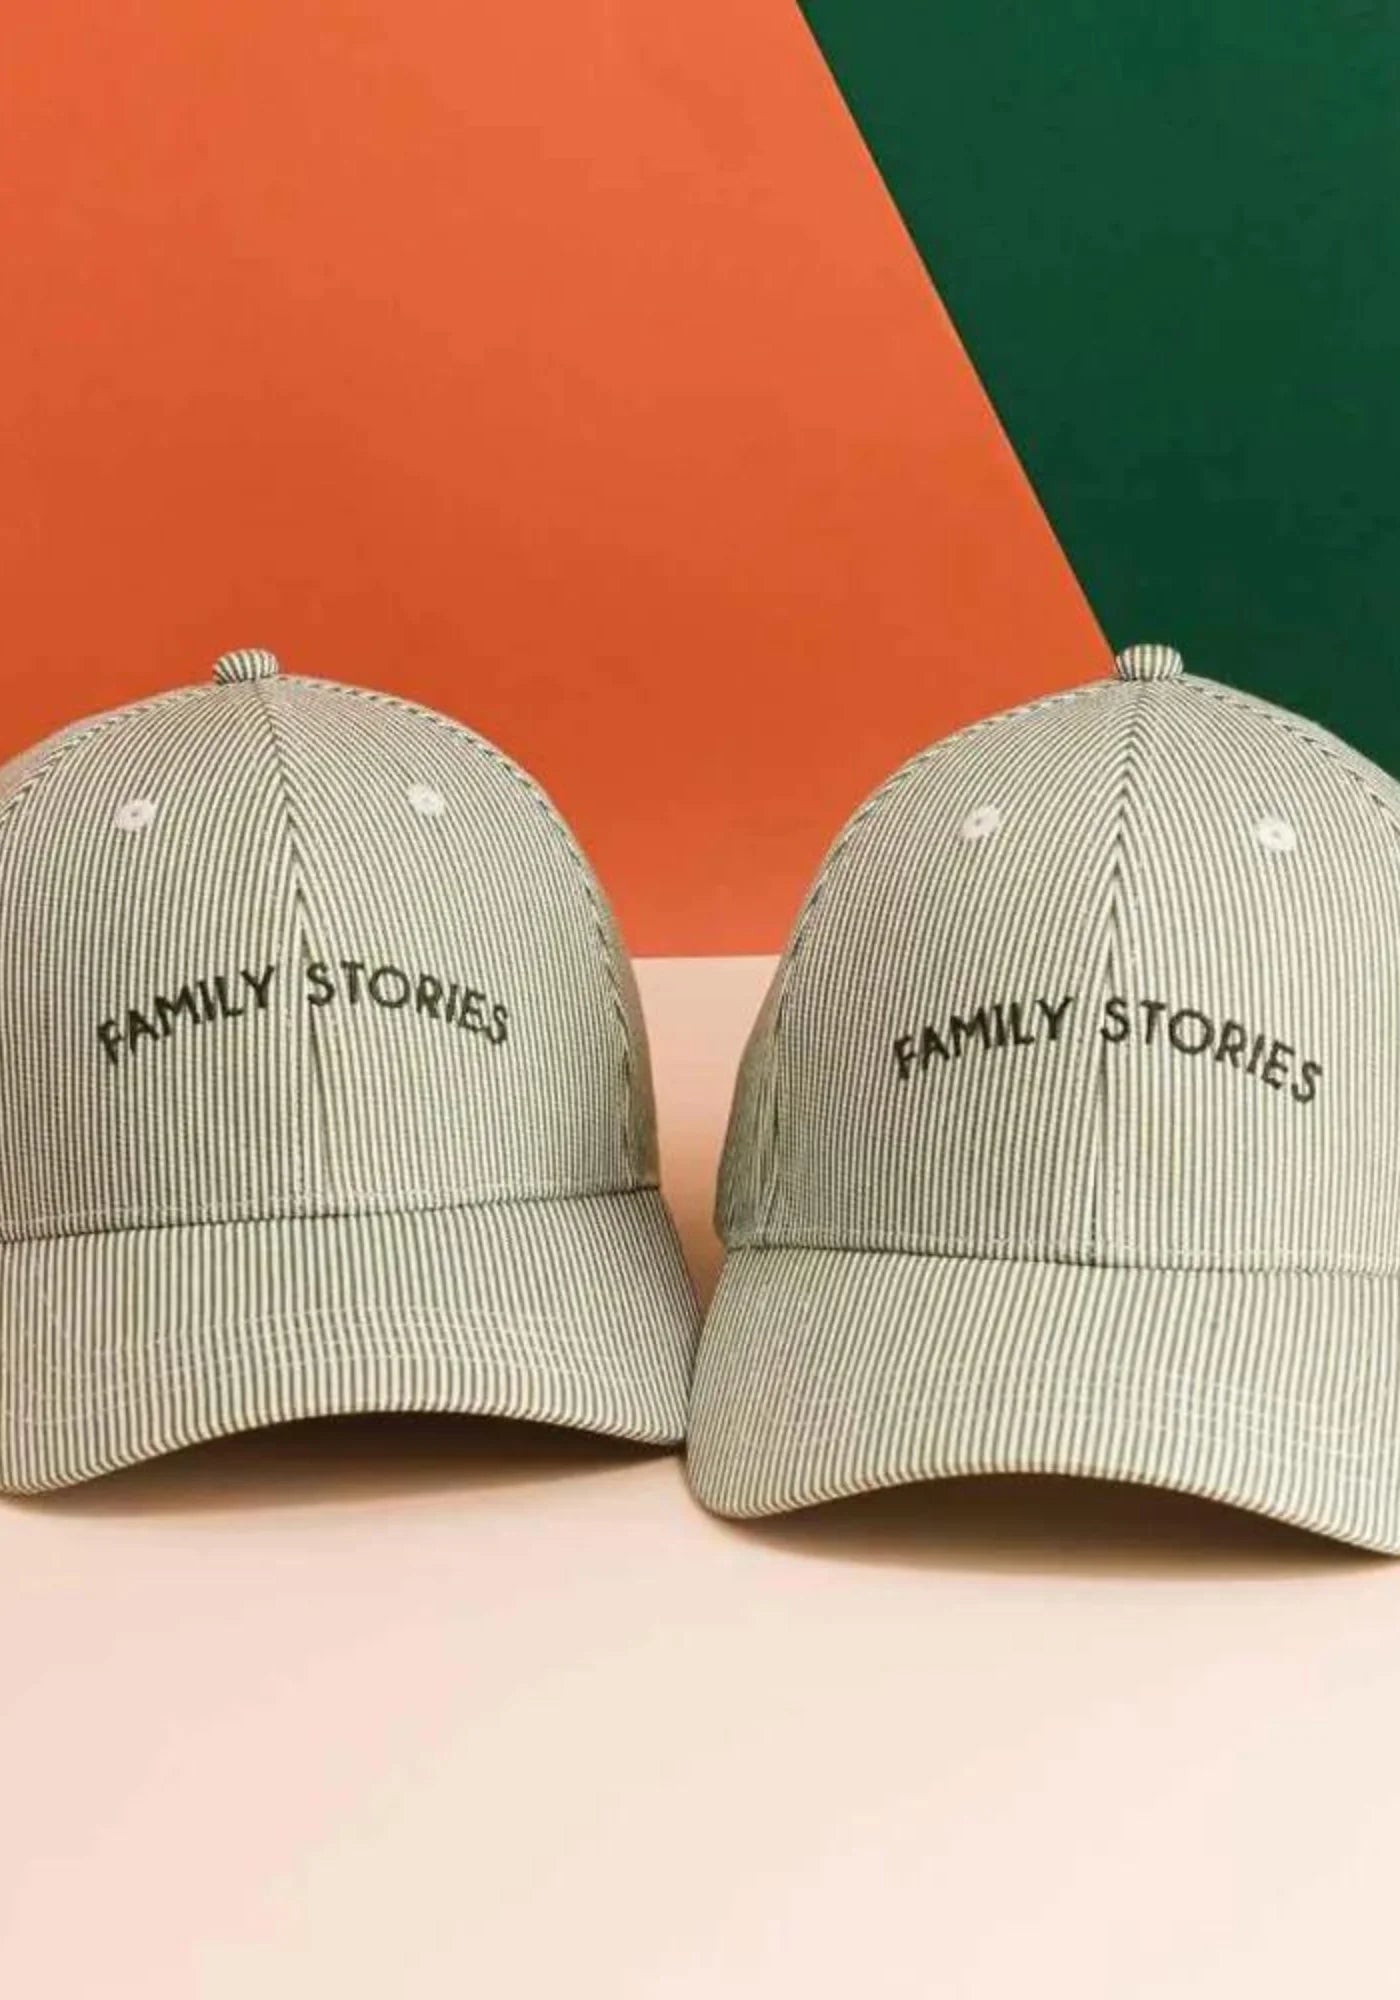 Les deux casquettes Family Stories pour enfant de chez Chamaye